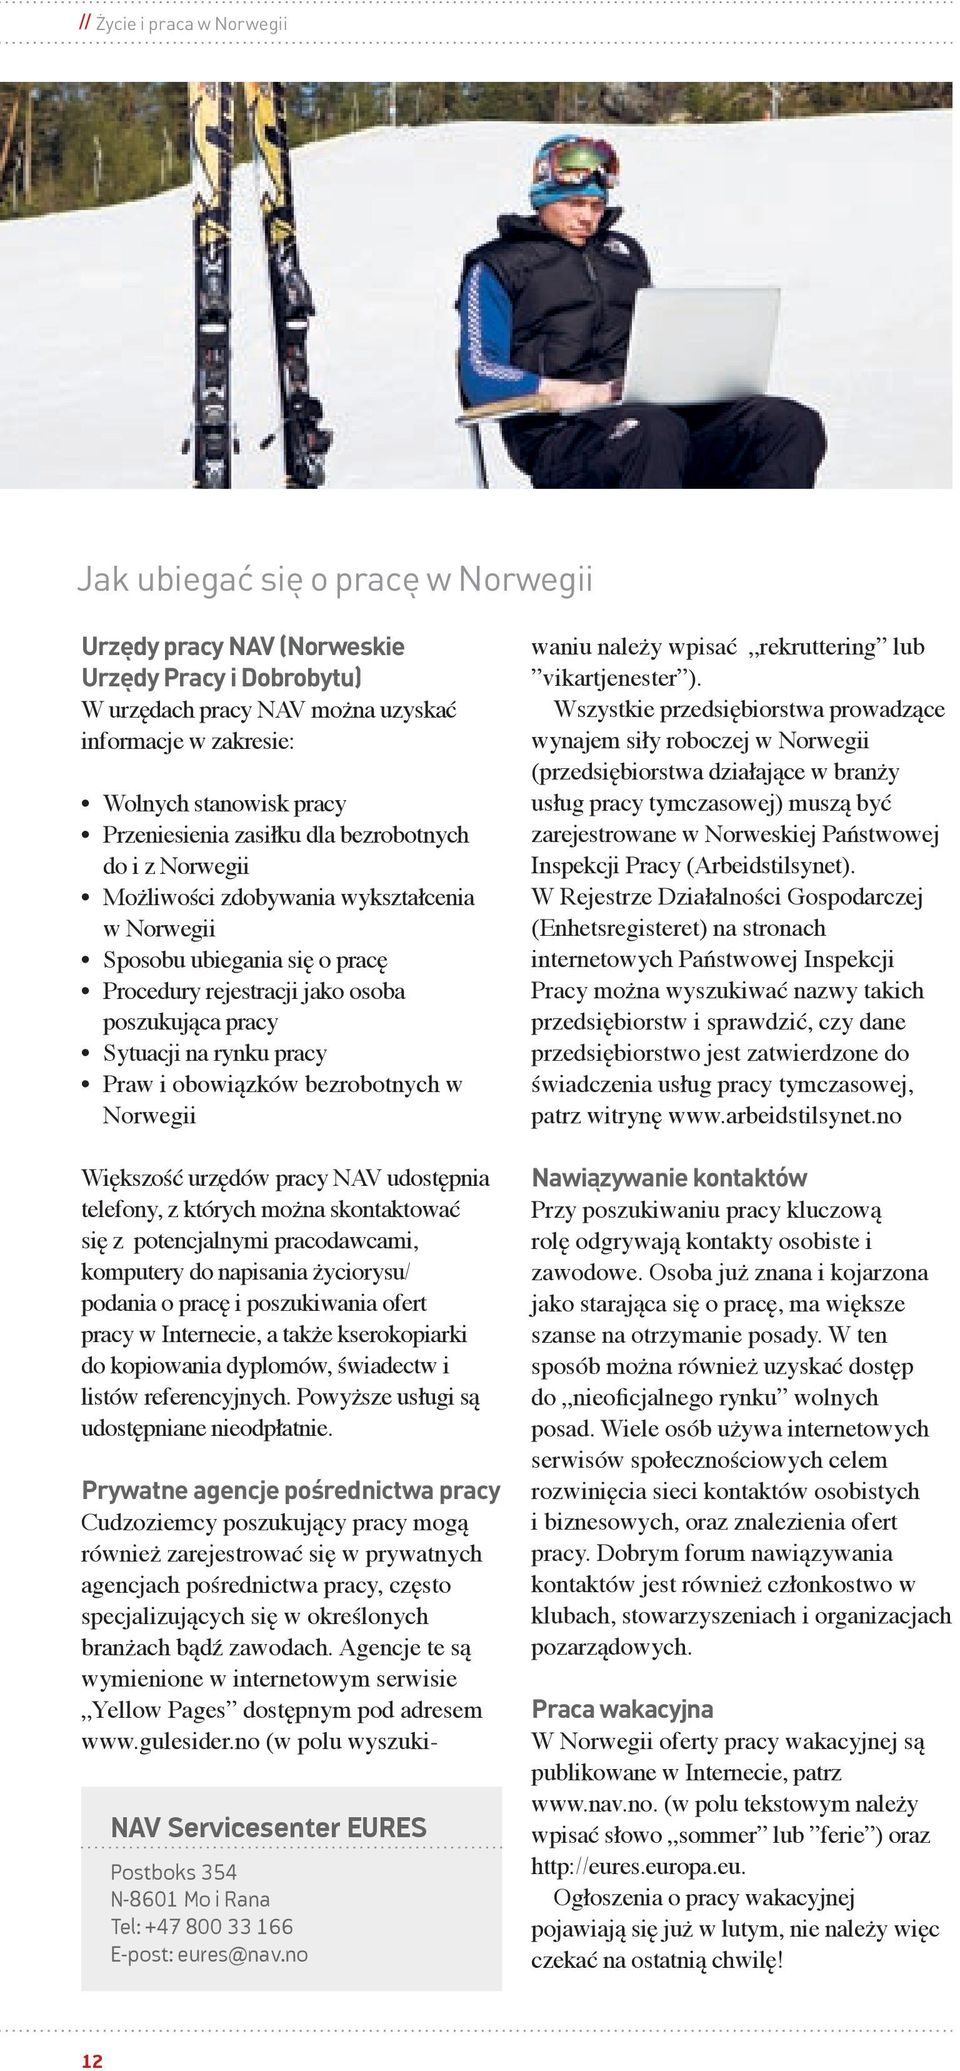 rynku pracy Praw i obowiązków bezrobotnych w Norwegii Większość urzędów pracy NAV udostępnia telefony, z których można skontaktować się z potencjalnymi pracodawcami, komputery do napisania życiorysu/